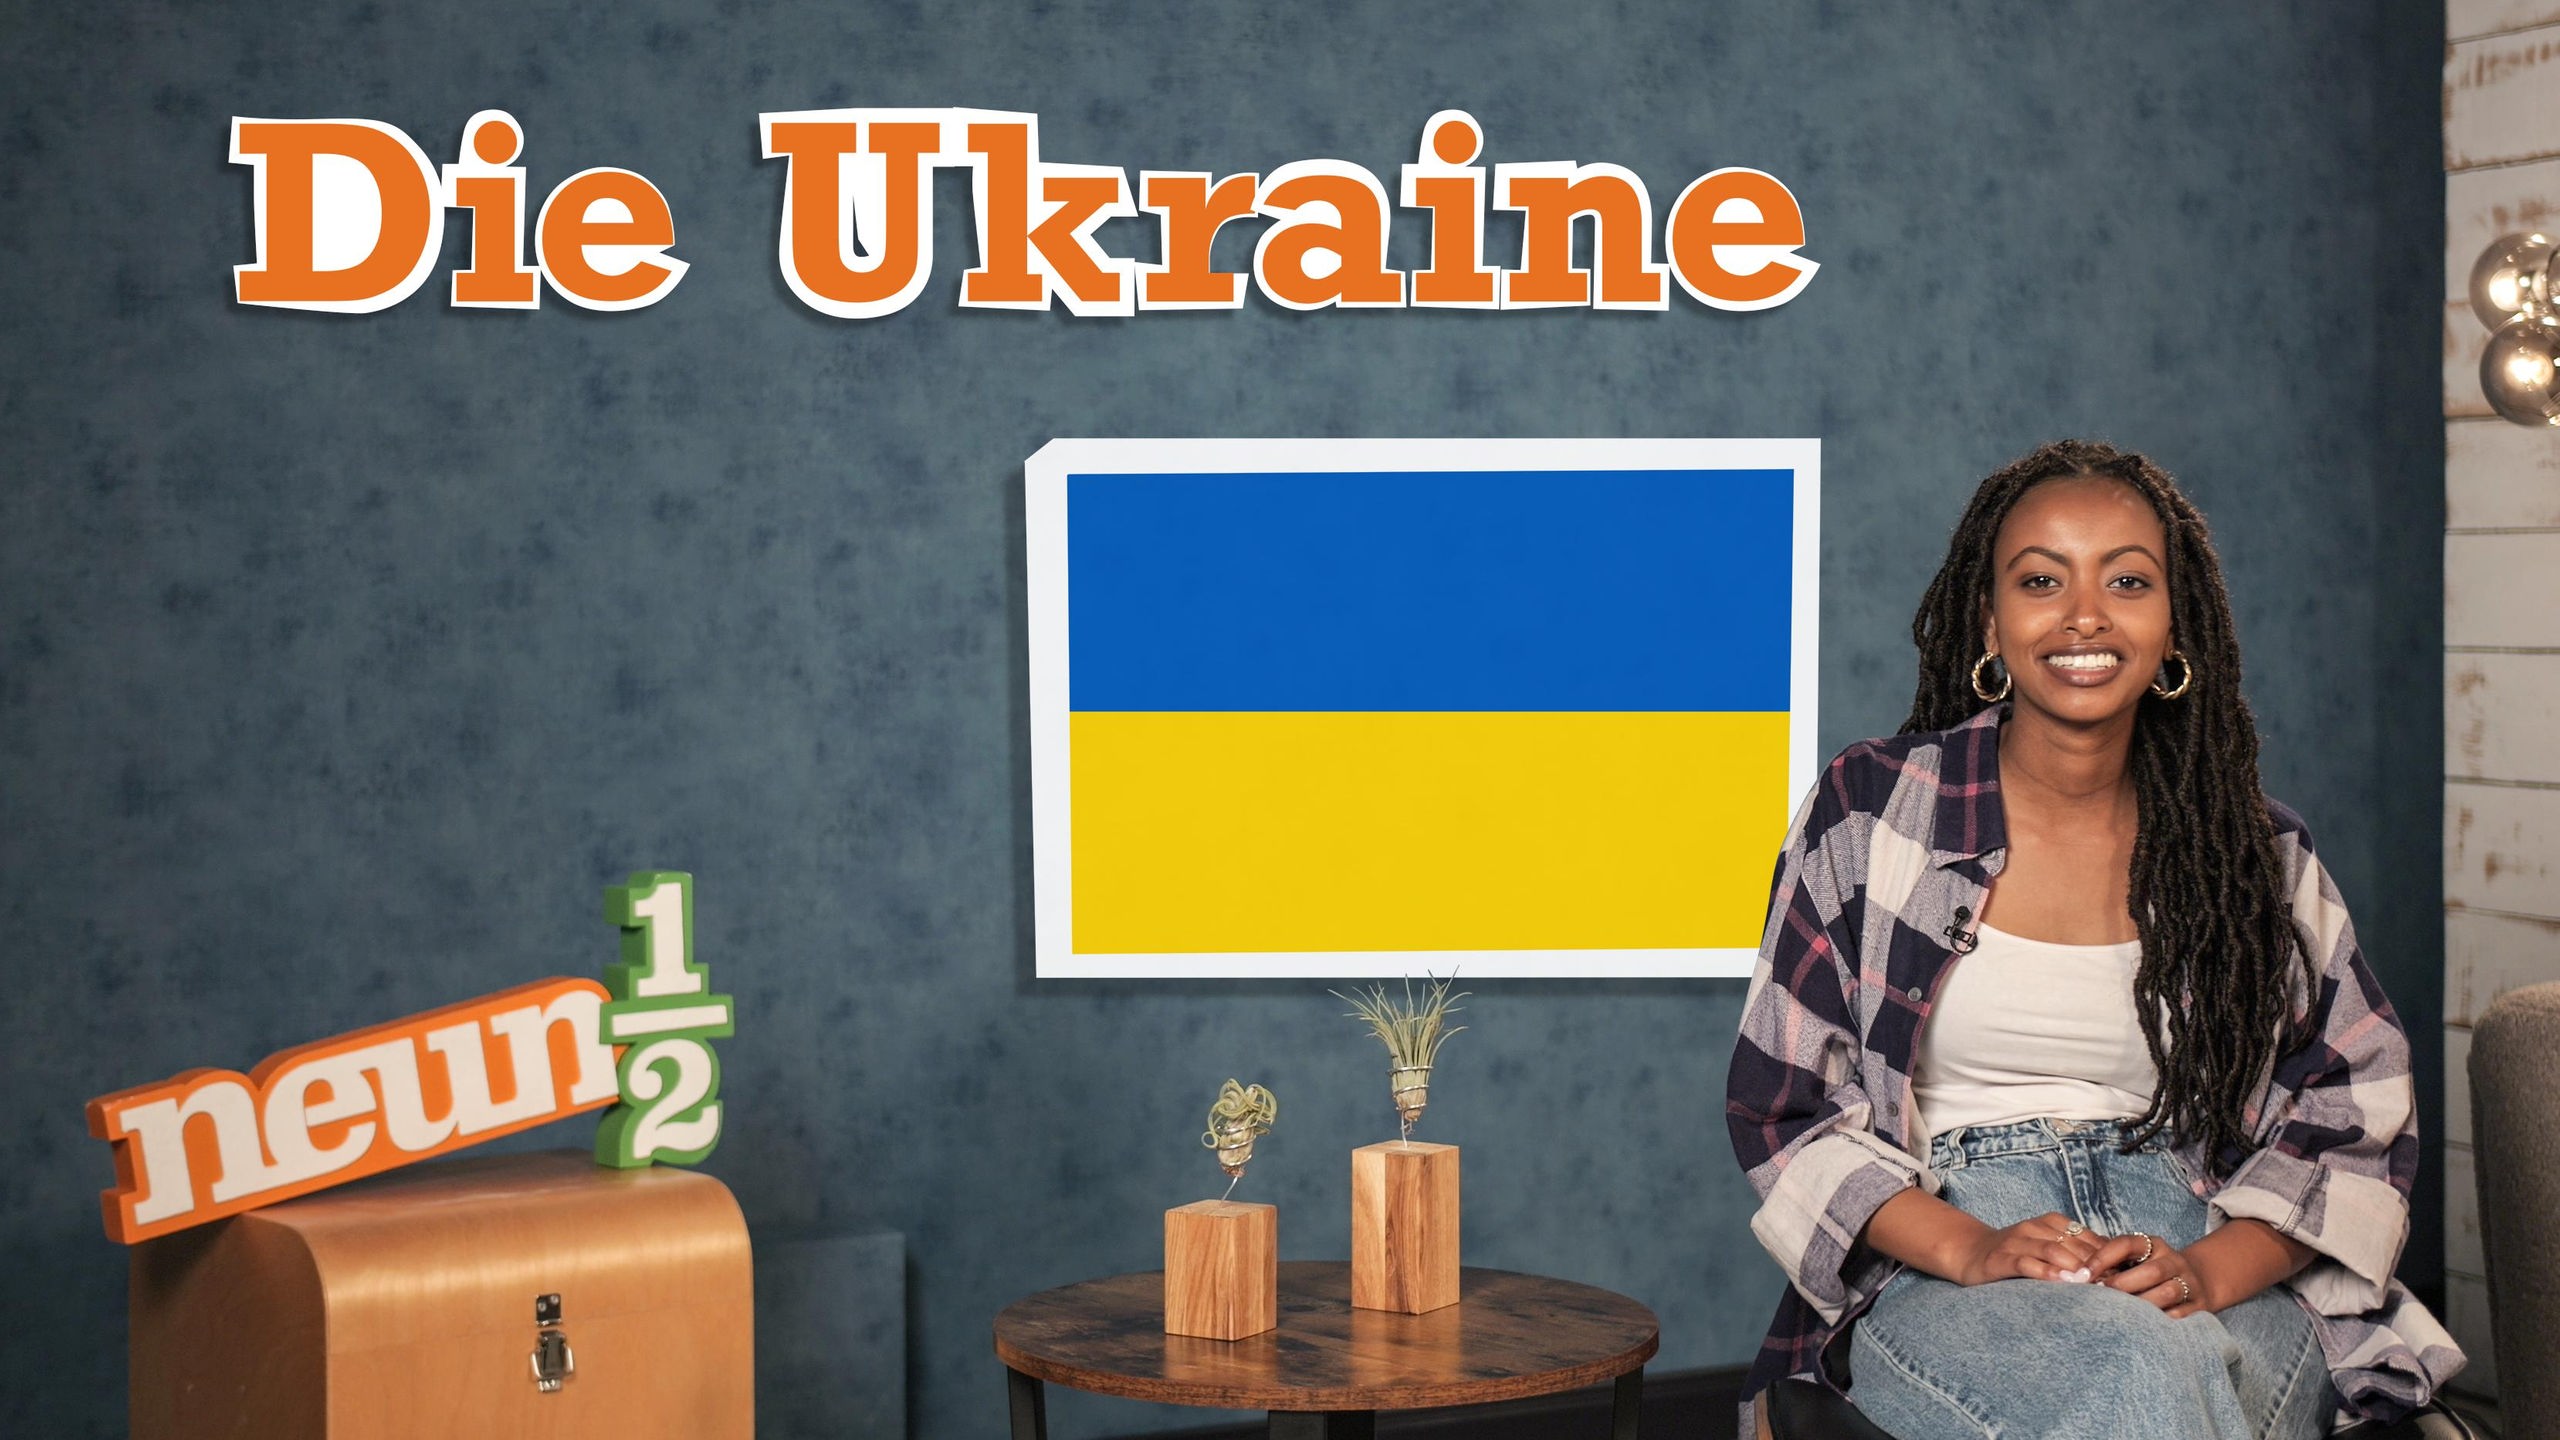 Luam sitzt auf einem Stuhl neben einem kleinen Tisch und dem neuneinhalb-Logo. Auf einer blauen Wand steht der Schriftzug „Die Ukraine“ und hinter Luam ist die ukrainische Flagge zu sehen.